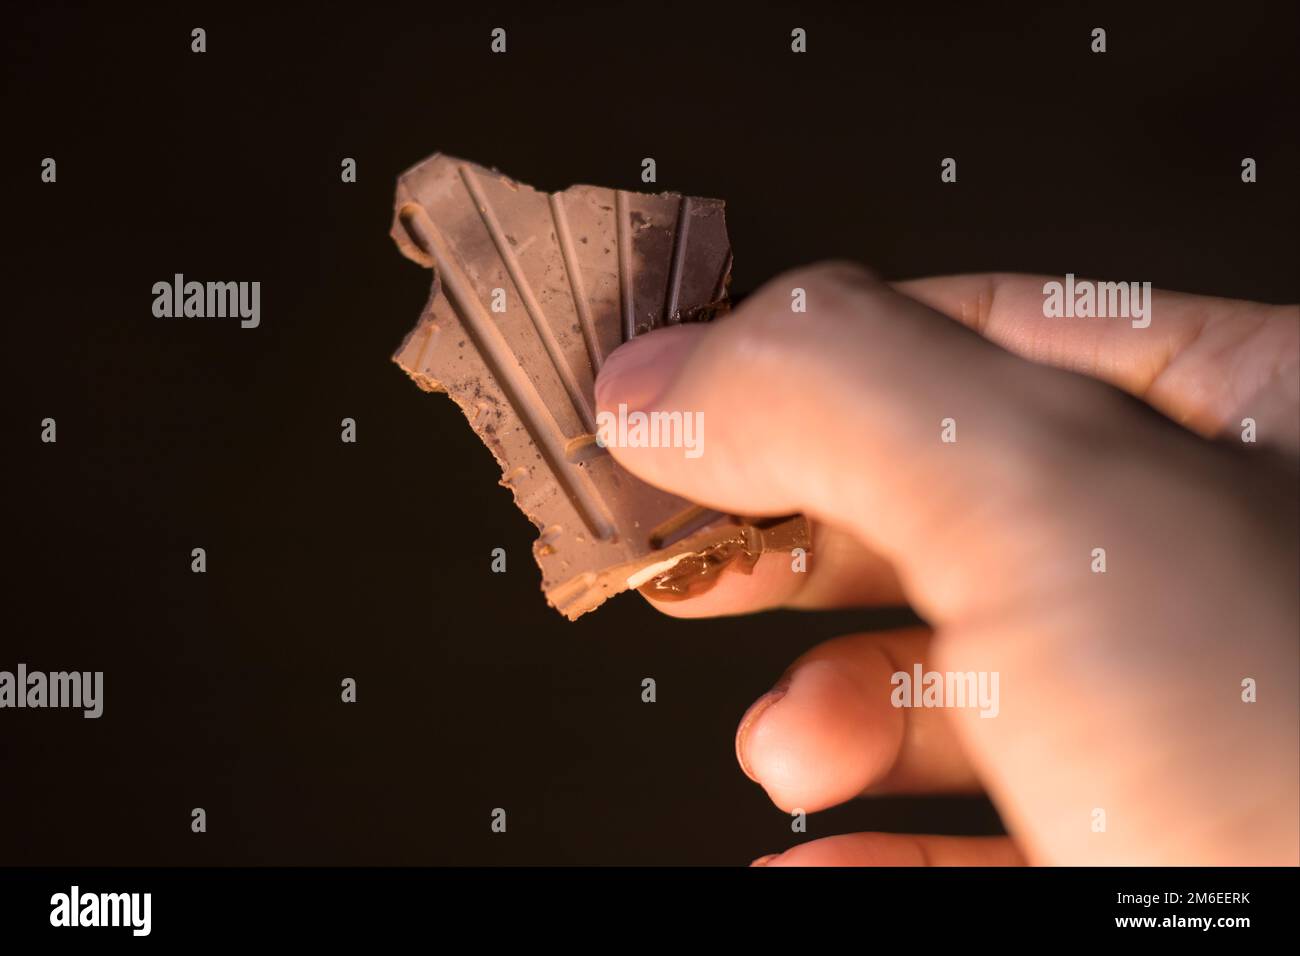 Un pezzo di cioccolato fondente in una mano femminile. Fuori fuoco  Fotografia naturale candida. Notte Foto stock - Alamy